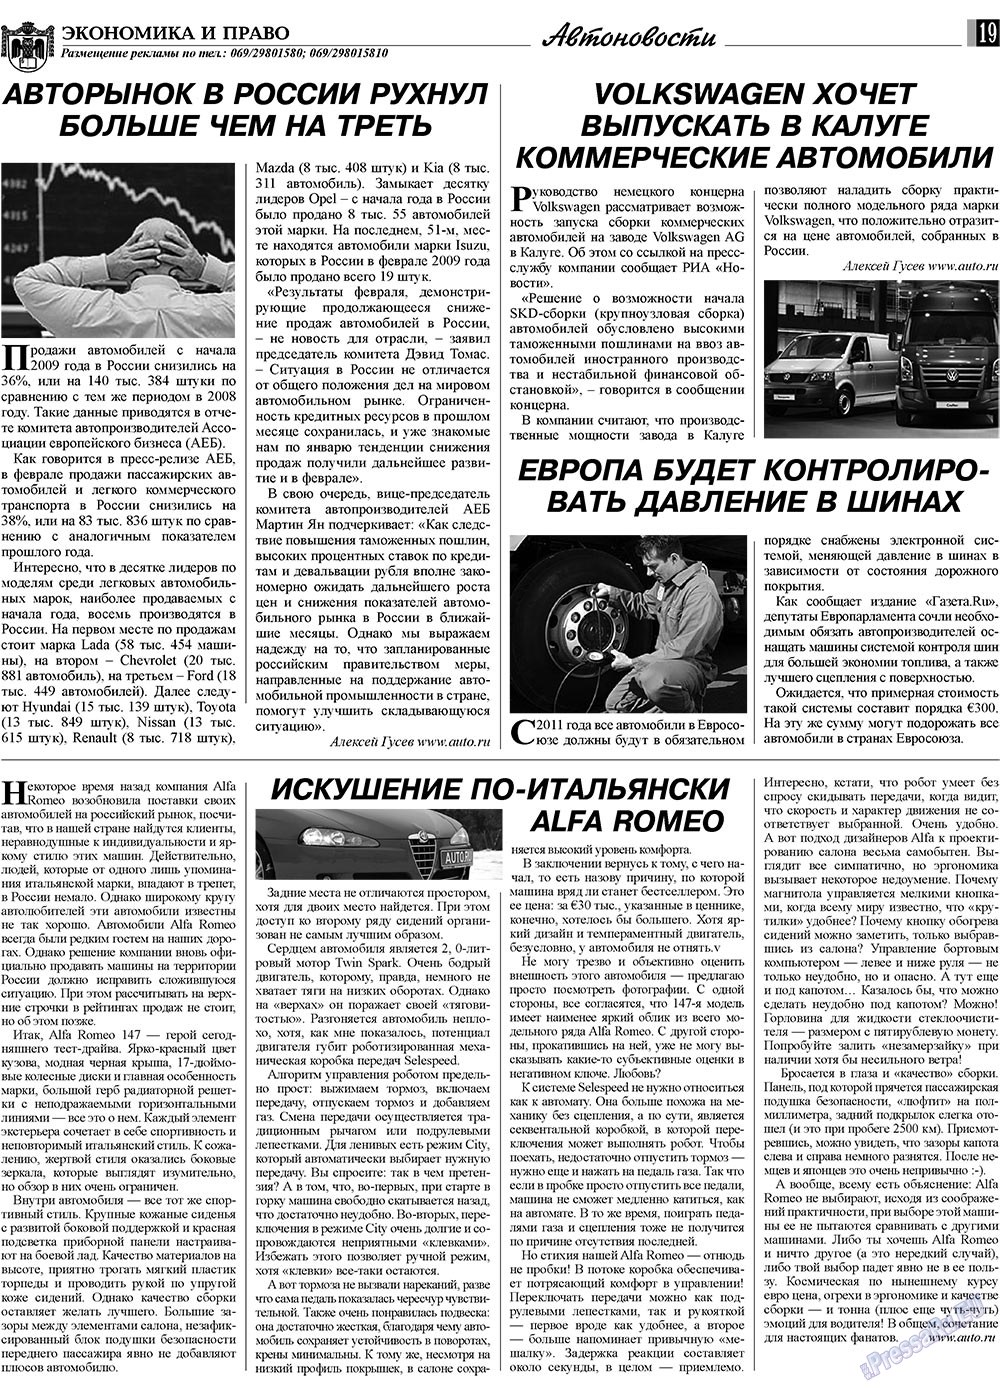 Экономика и право, газета. 2009 №4 стр.19